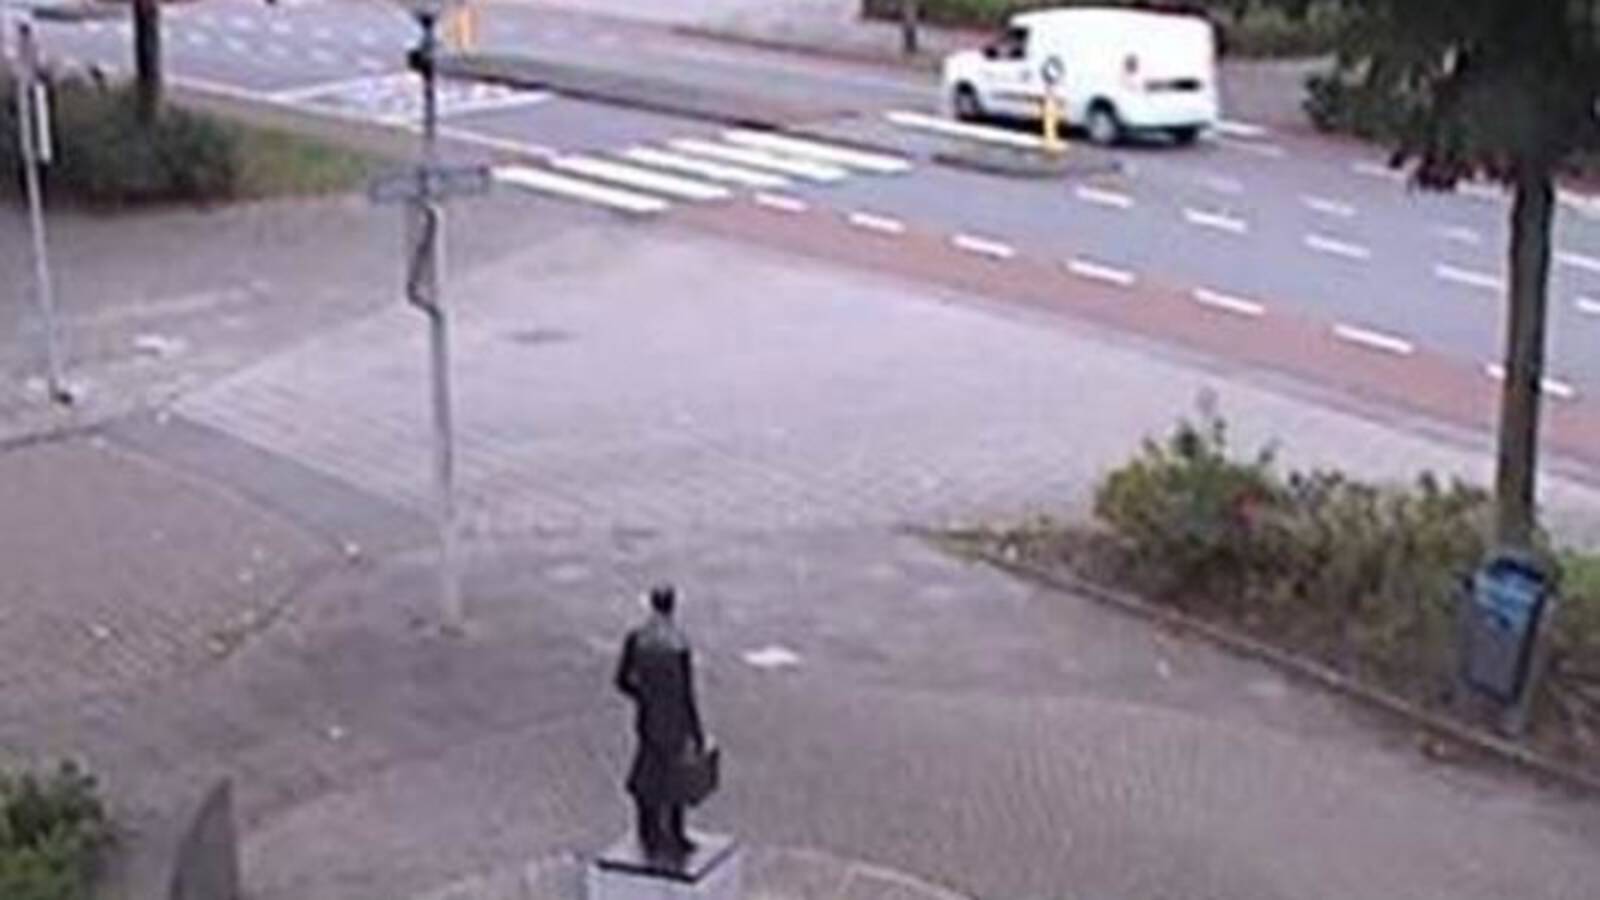 The white van captured on camera near the home of Derk Wiersum.